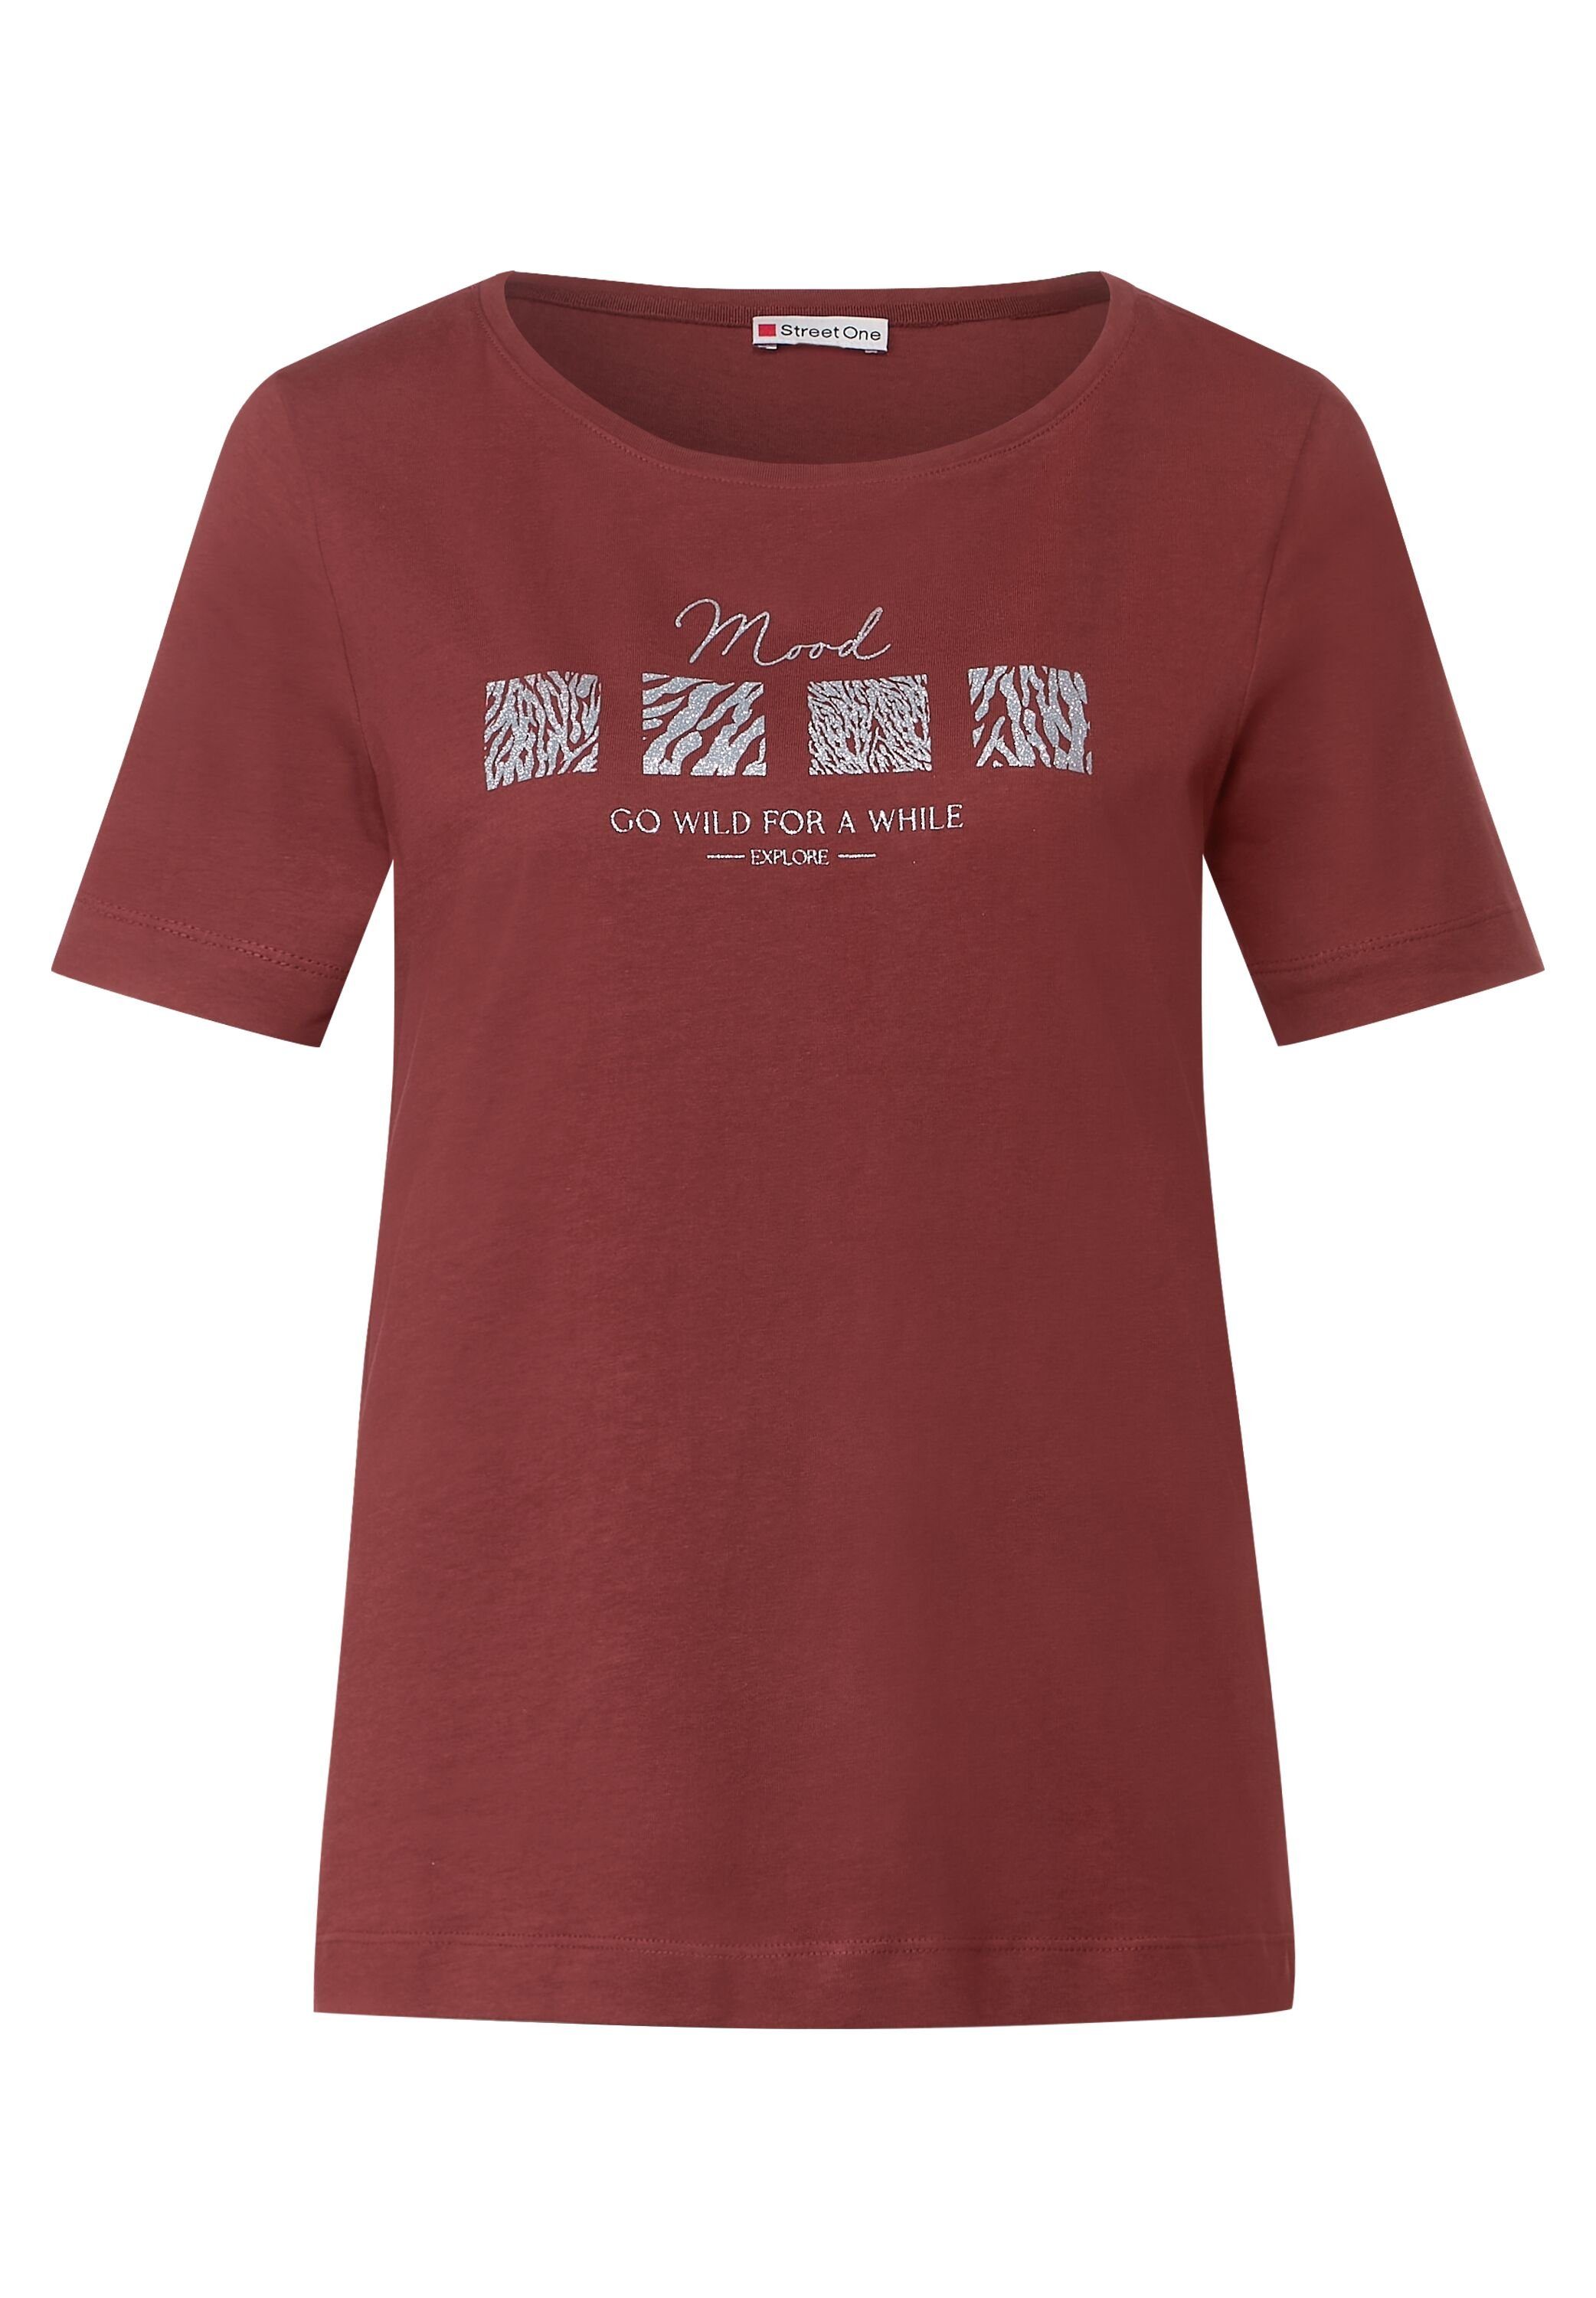 T-Shirt ONE foxy aus Baumwolle dark reiner STREET red